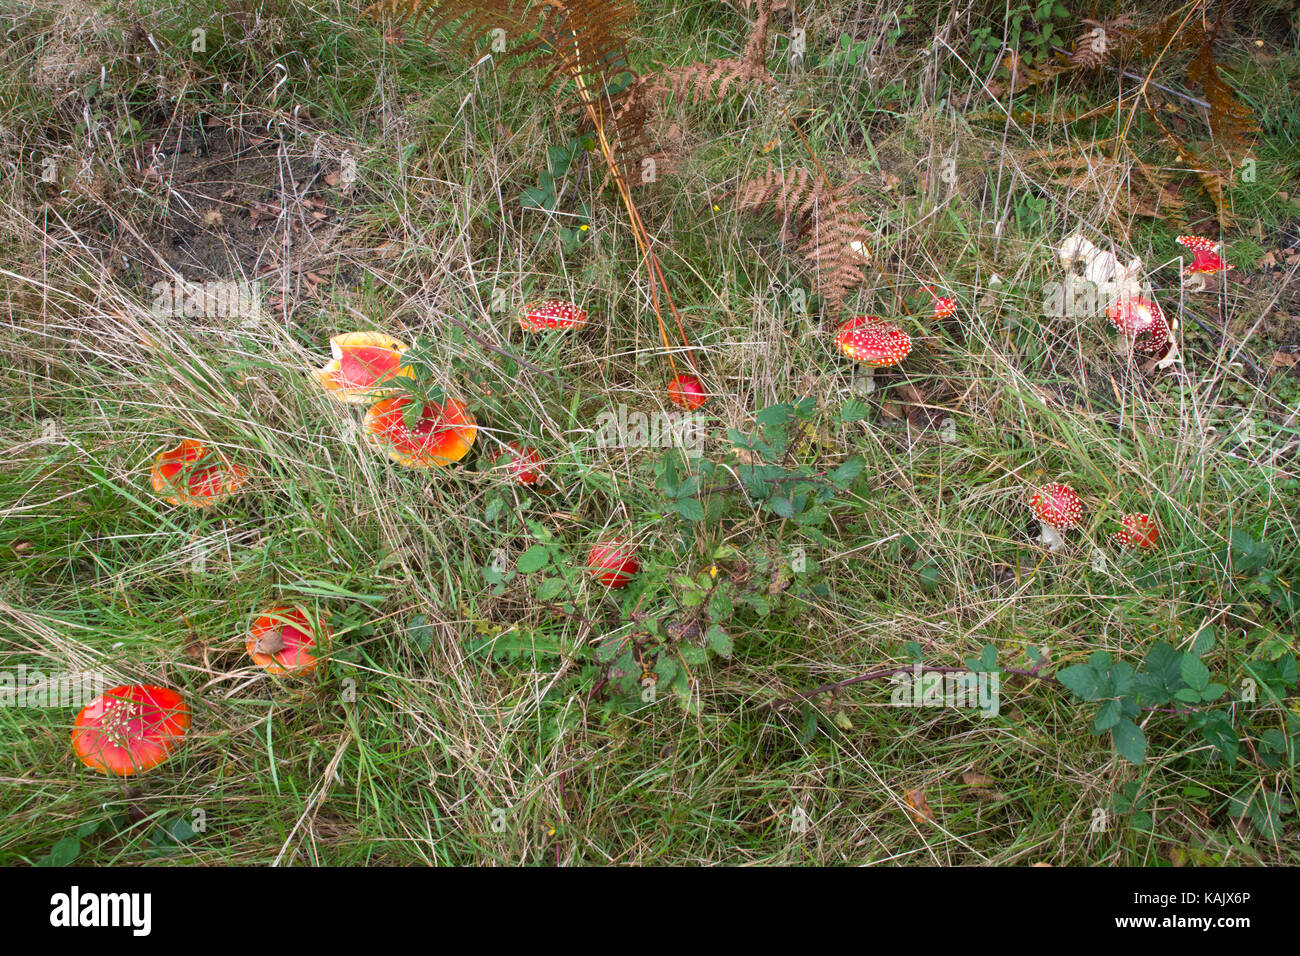 Gruppo di colorati fly agaric toadstools (amanita muscaria) crescente tra erba lunga in autunno Foto Stock